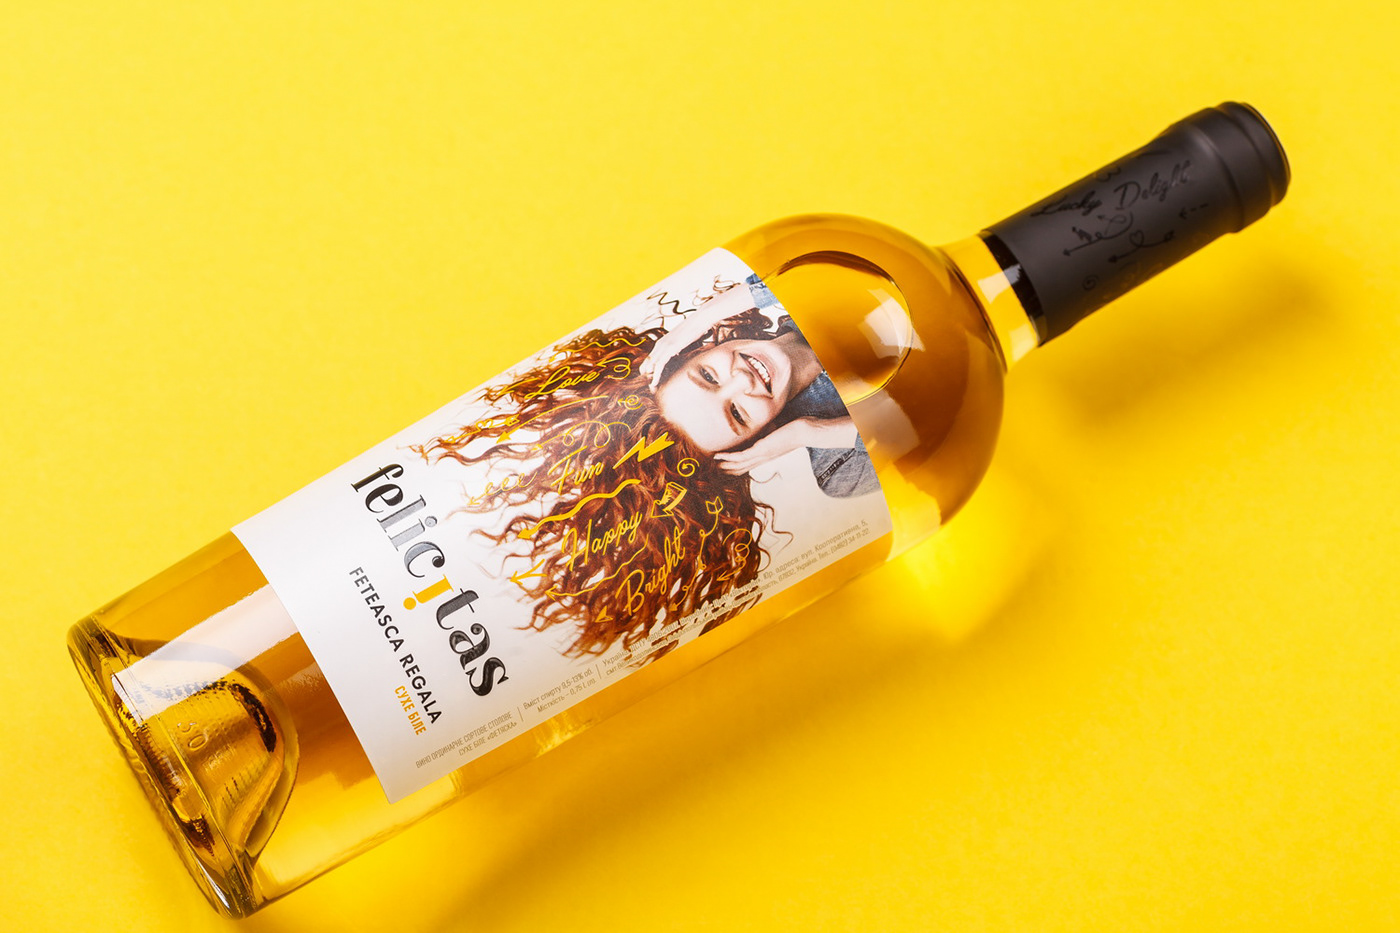 43oz design studio felicitas wine label Packaging packaging design graphic design  modern ukraine Moldova